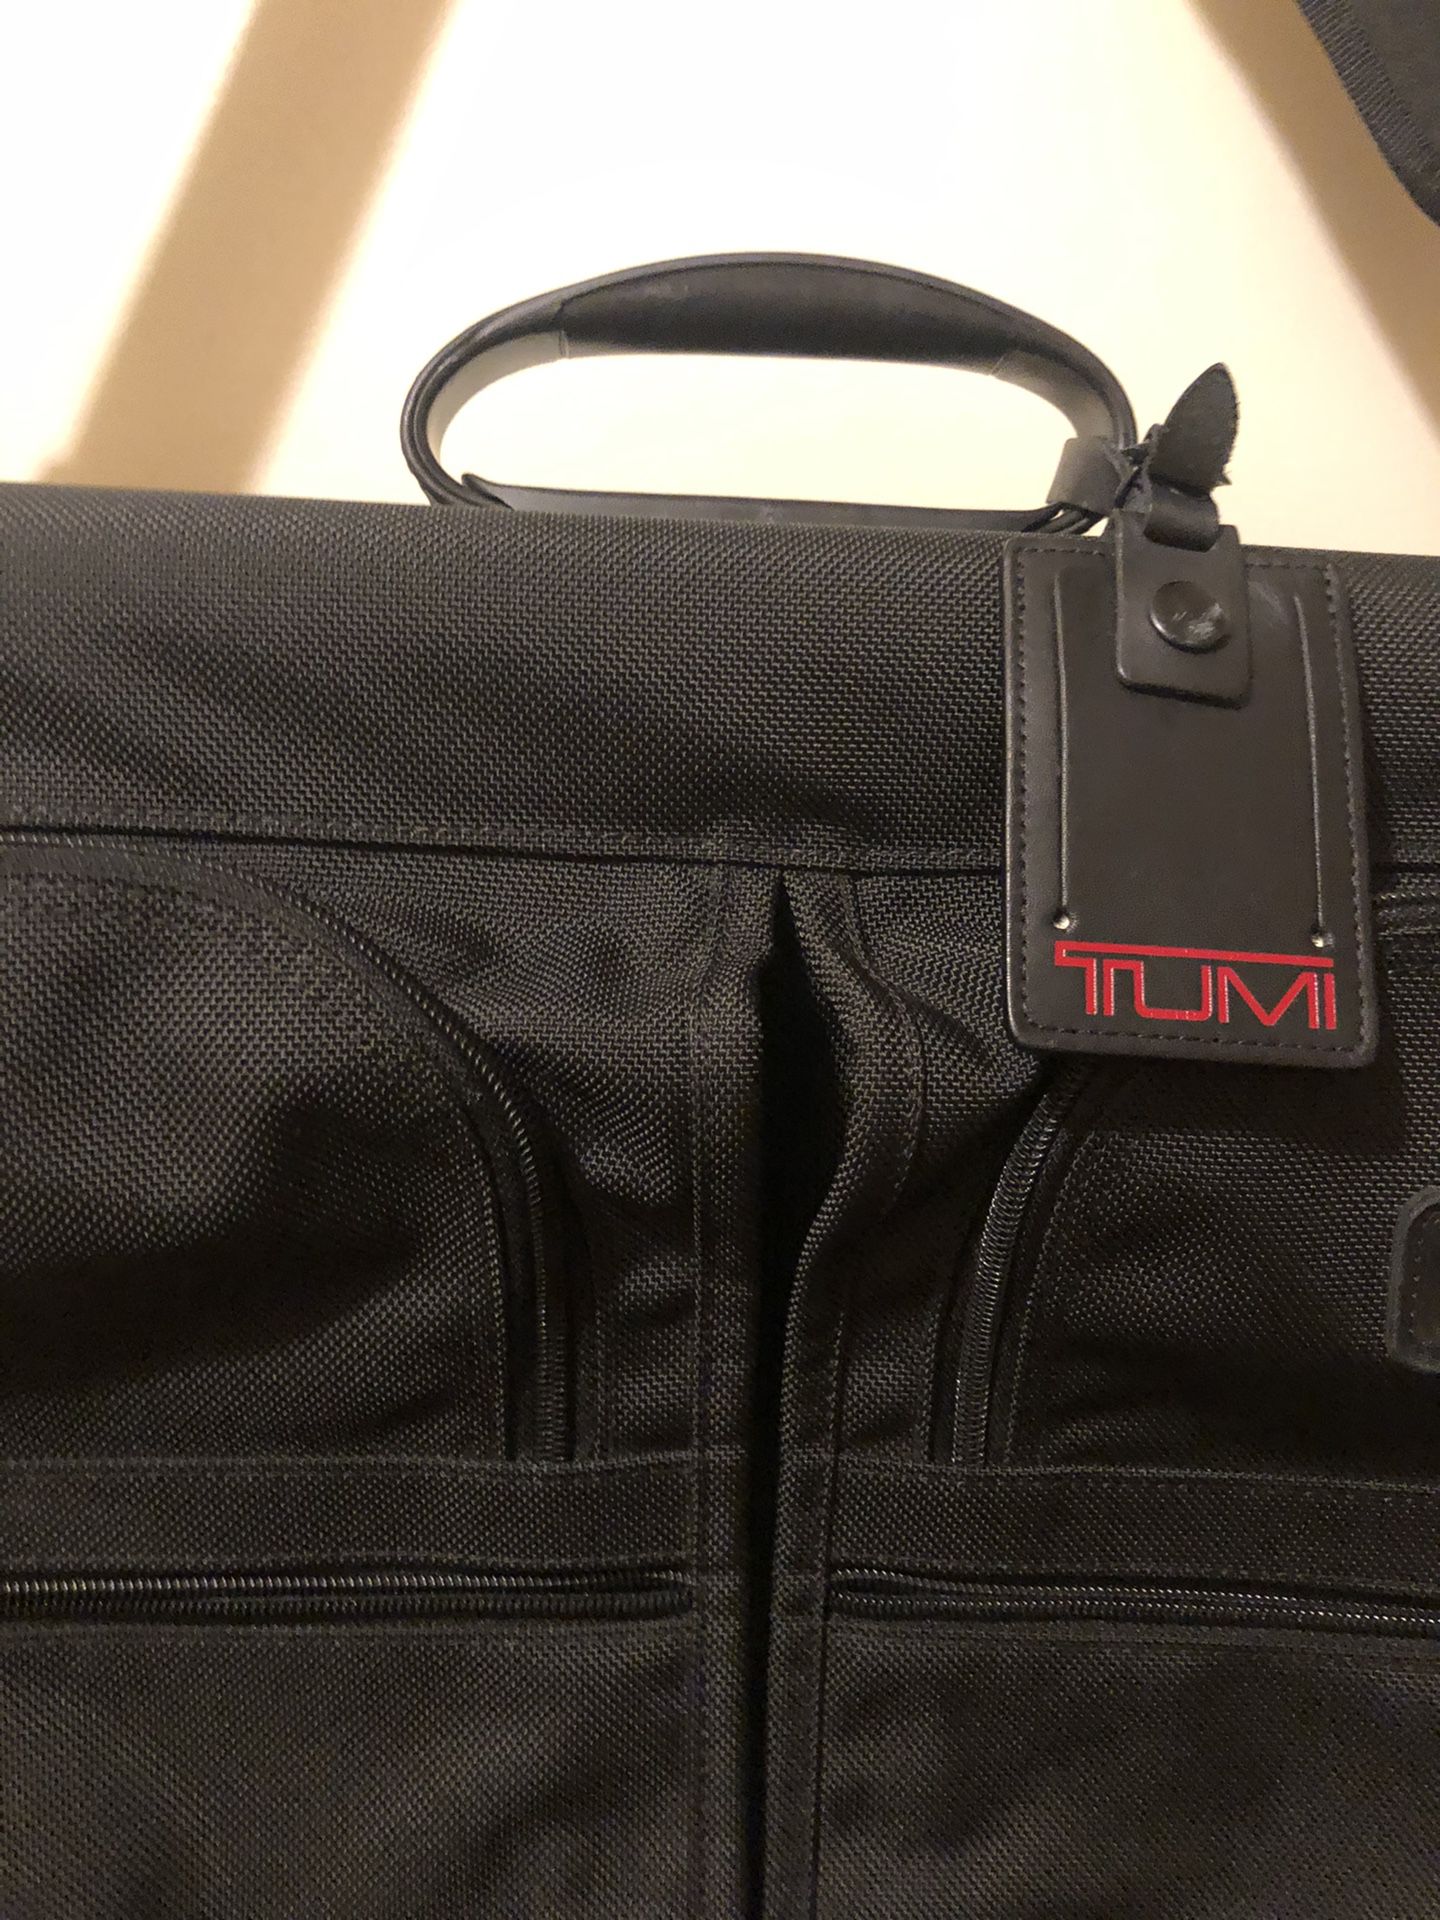 Tumi Traveling luggage